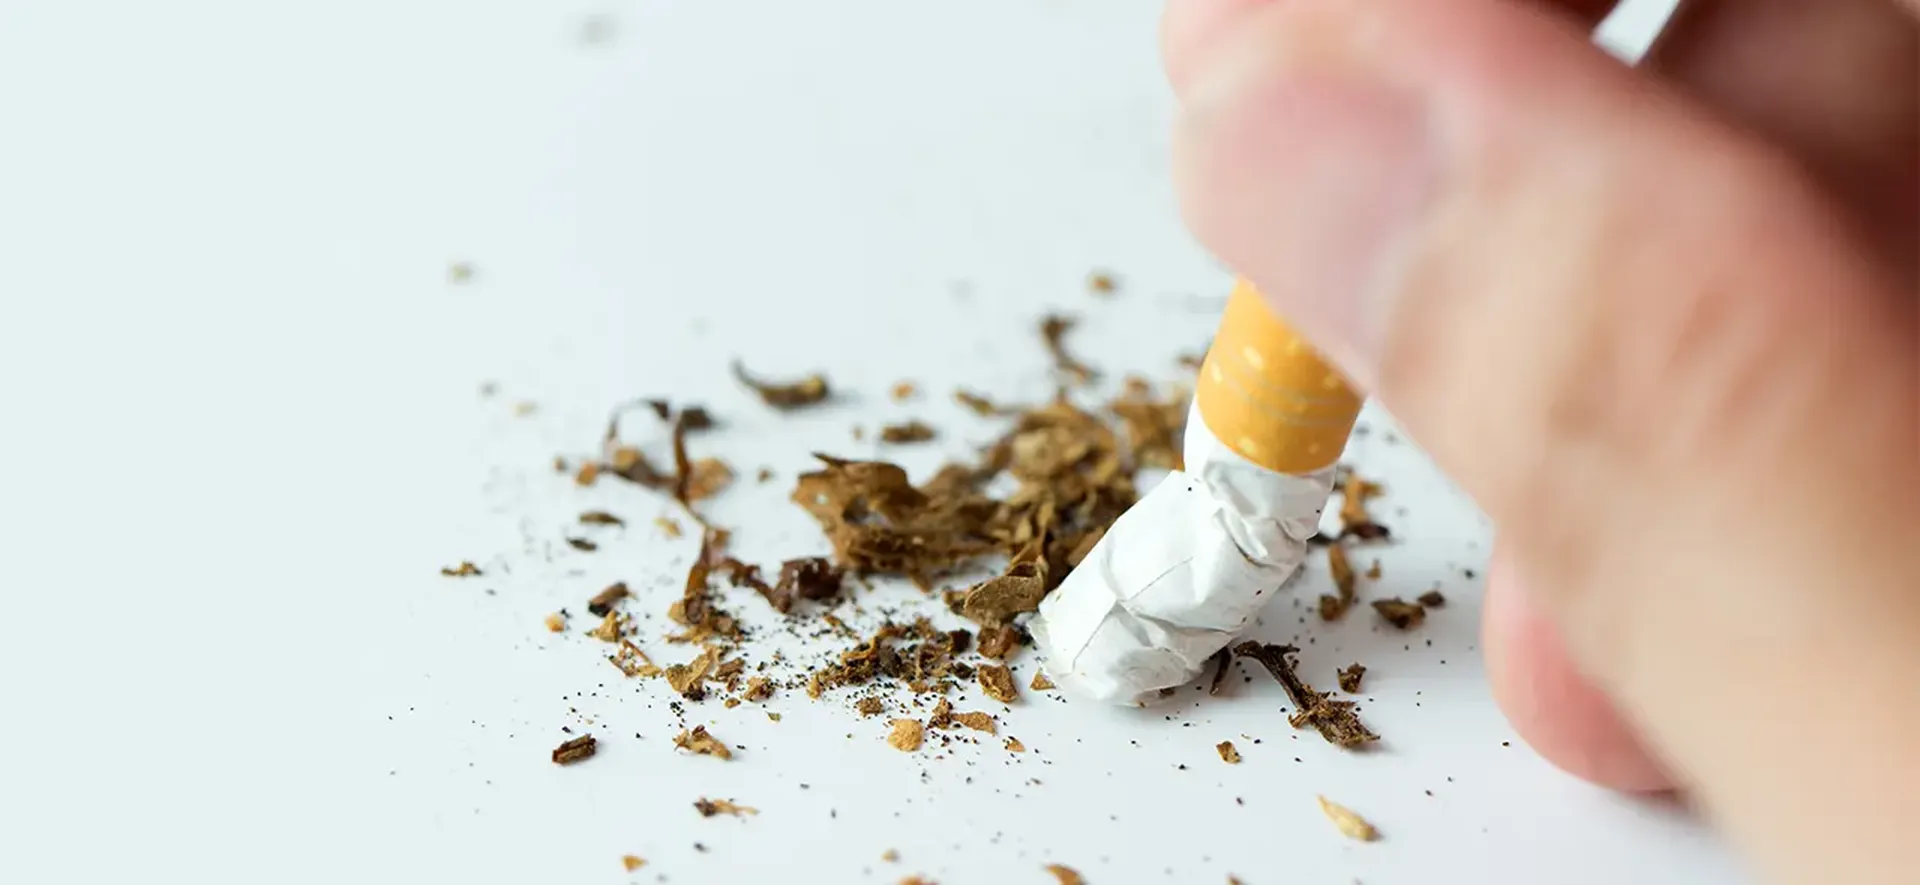 Pare de fumar: tabagismo pode provocar câncer, tuberculose, doenças respiratórias, impotência e infertilidade